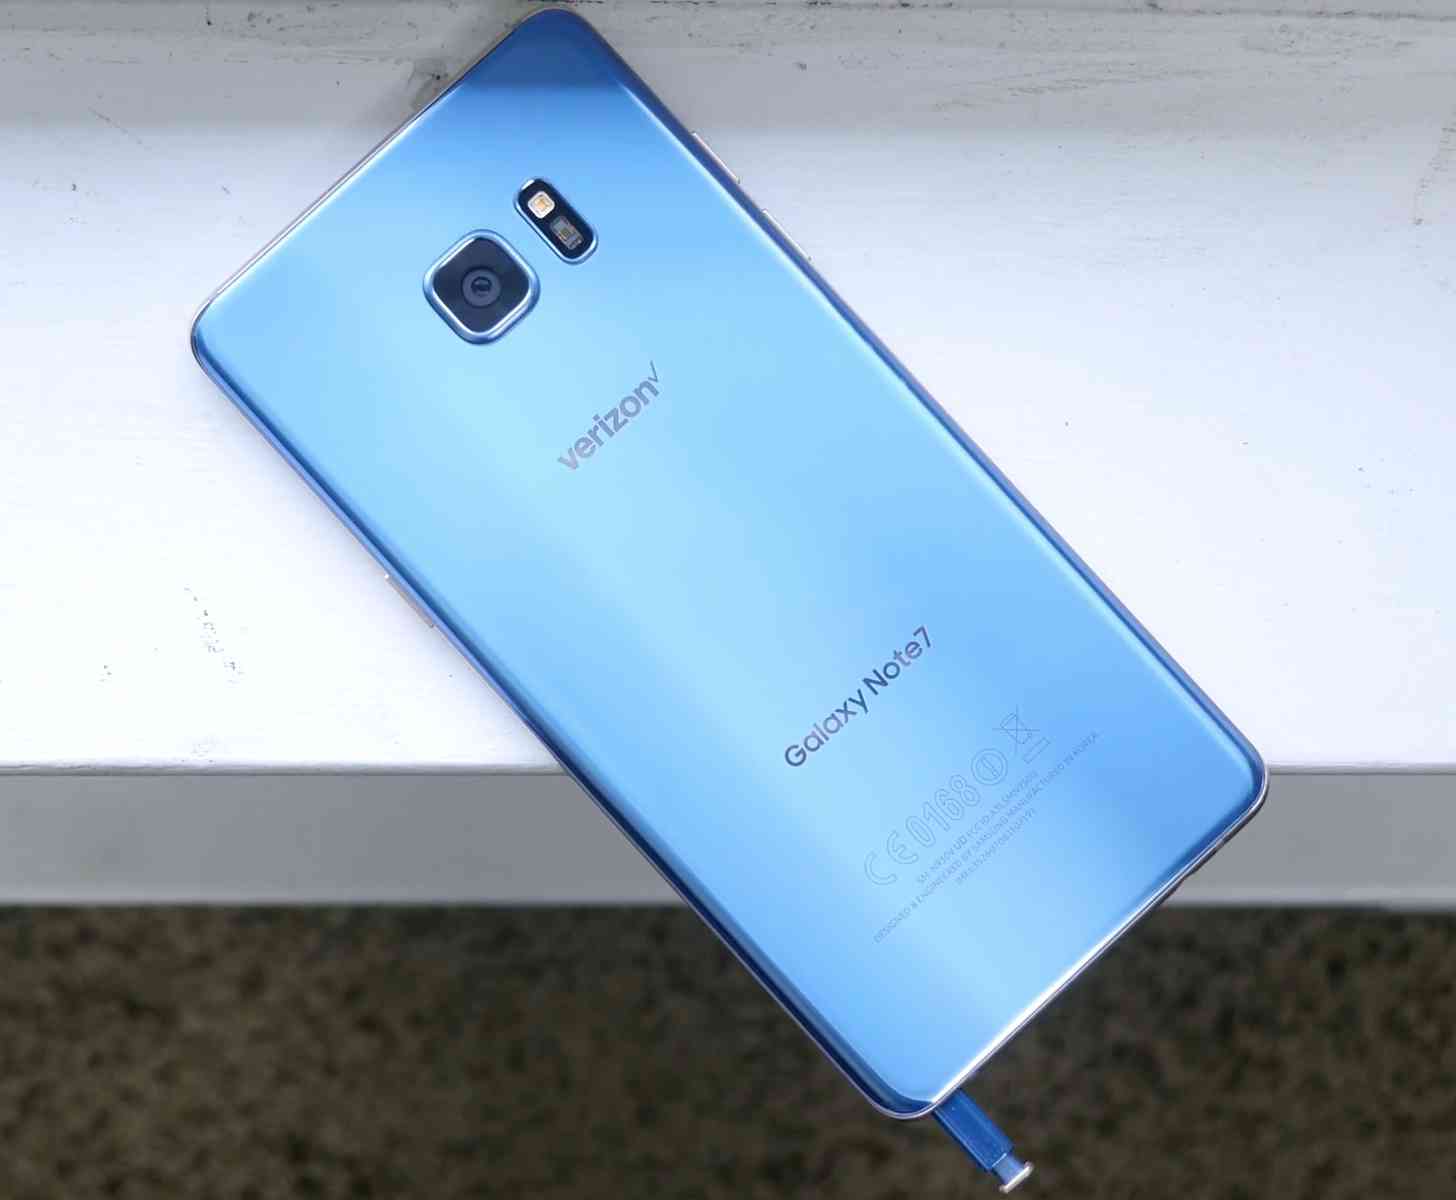 Samsung Galaxy Note 7 Blue Coral rear Verizon logo